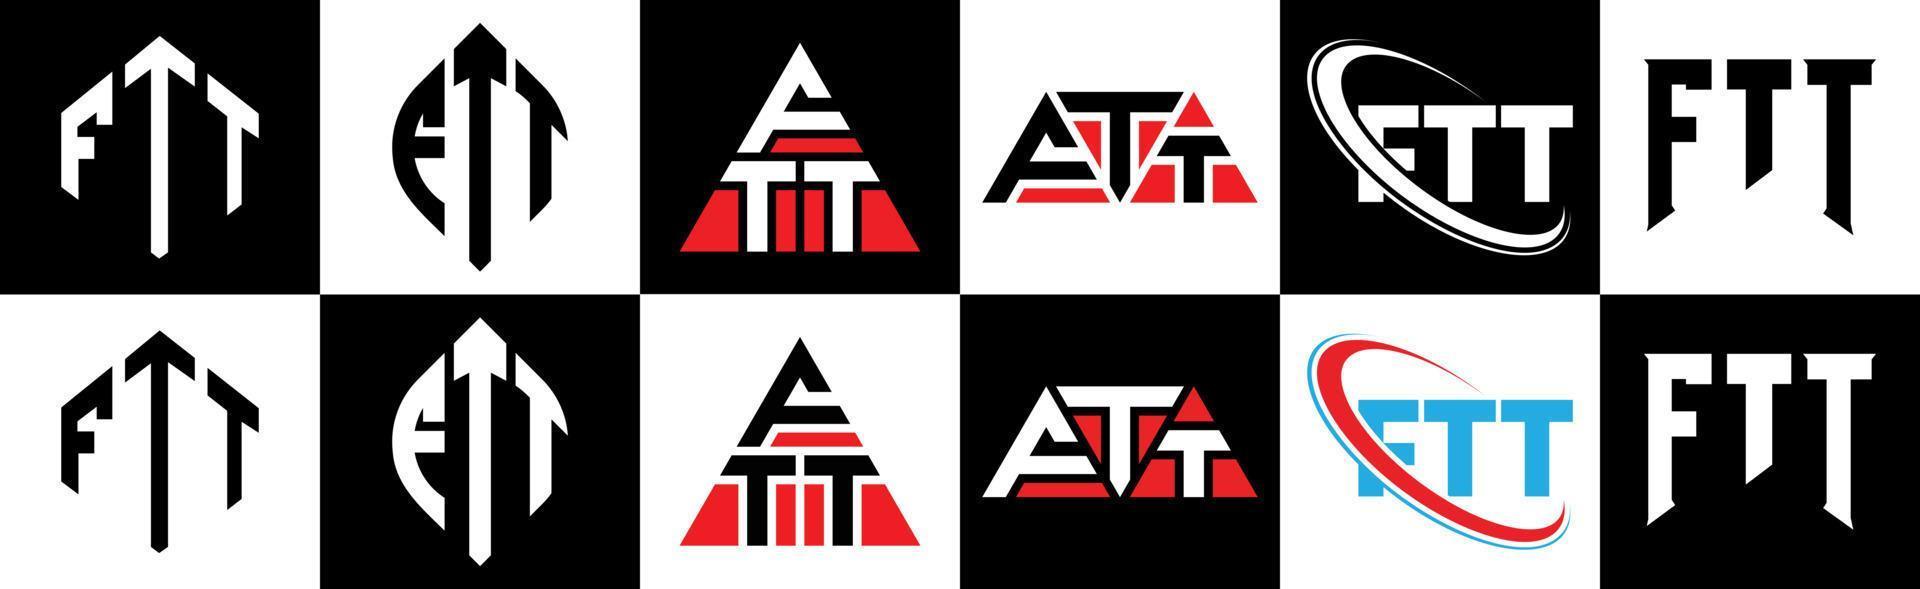 ftt-Buchstaben-Logo-Design in sechs Stilen. ftt polygon, kreis, dreieck, sechseck, flacher und einfacher stil mit schwarz-weißem buchstabenlogo in einer zeichenfläche. ftt minimalistisches und klassisches Logo vektor